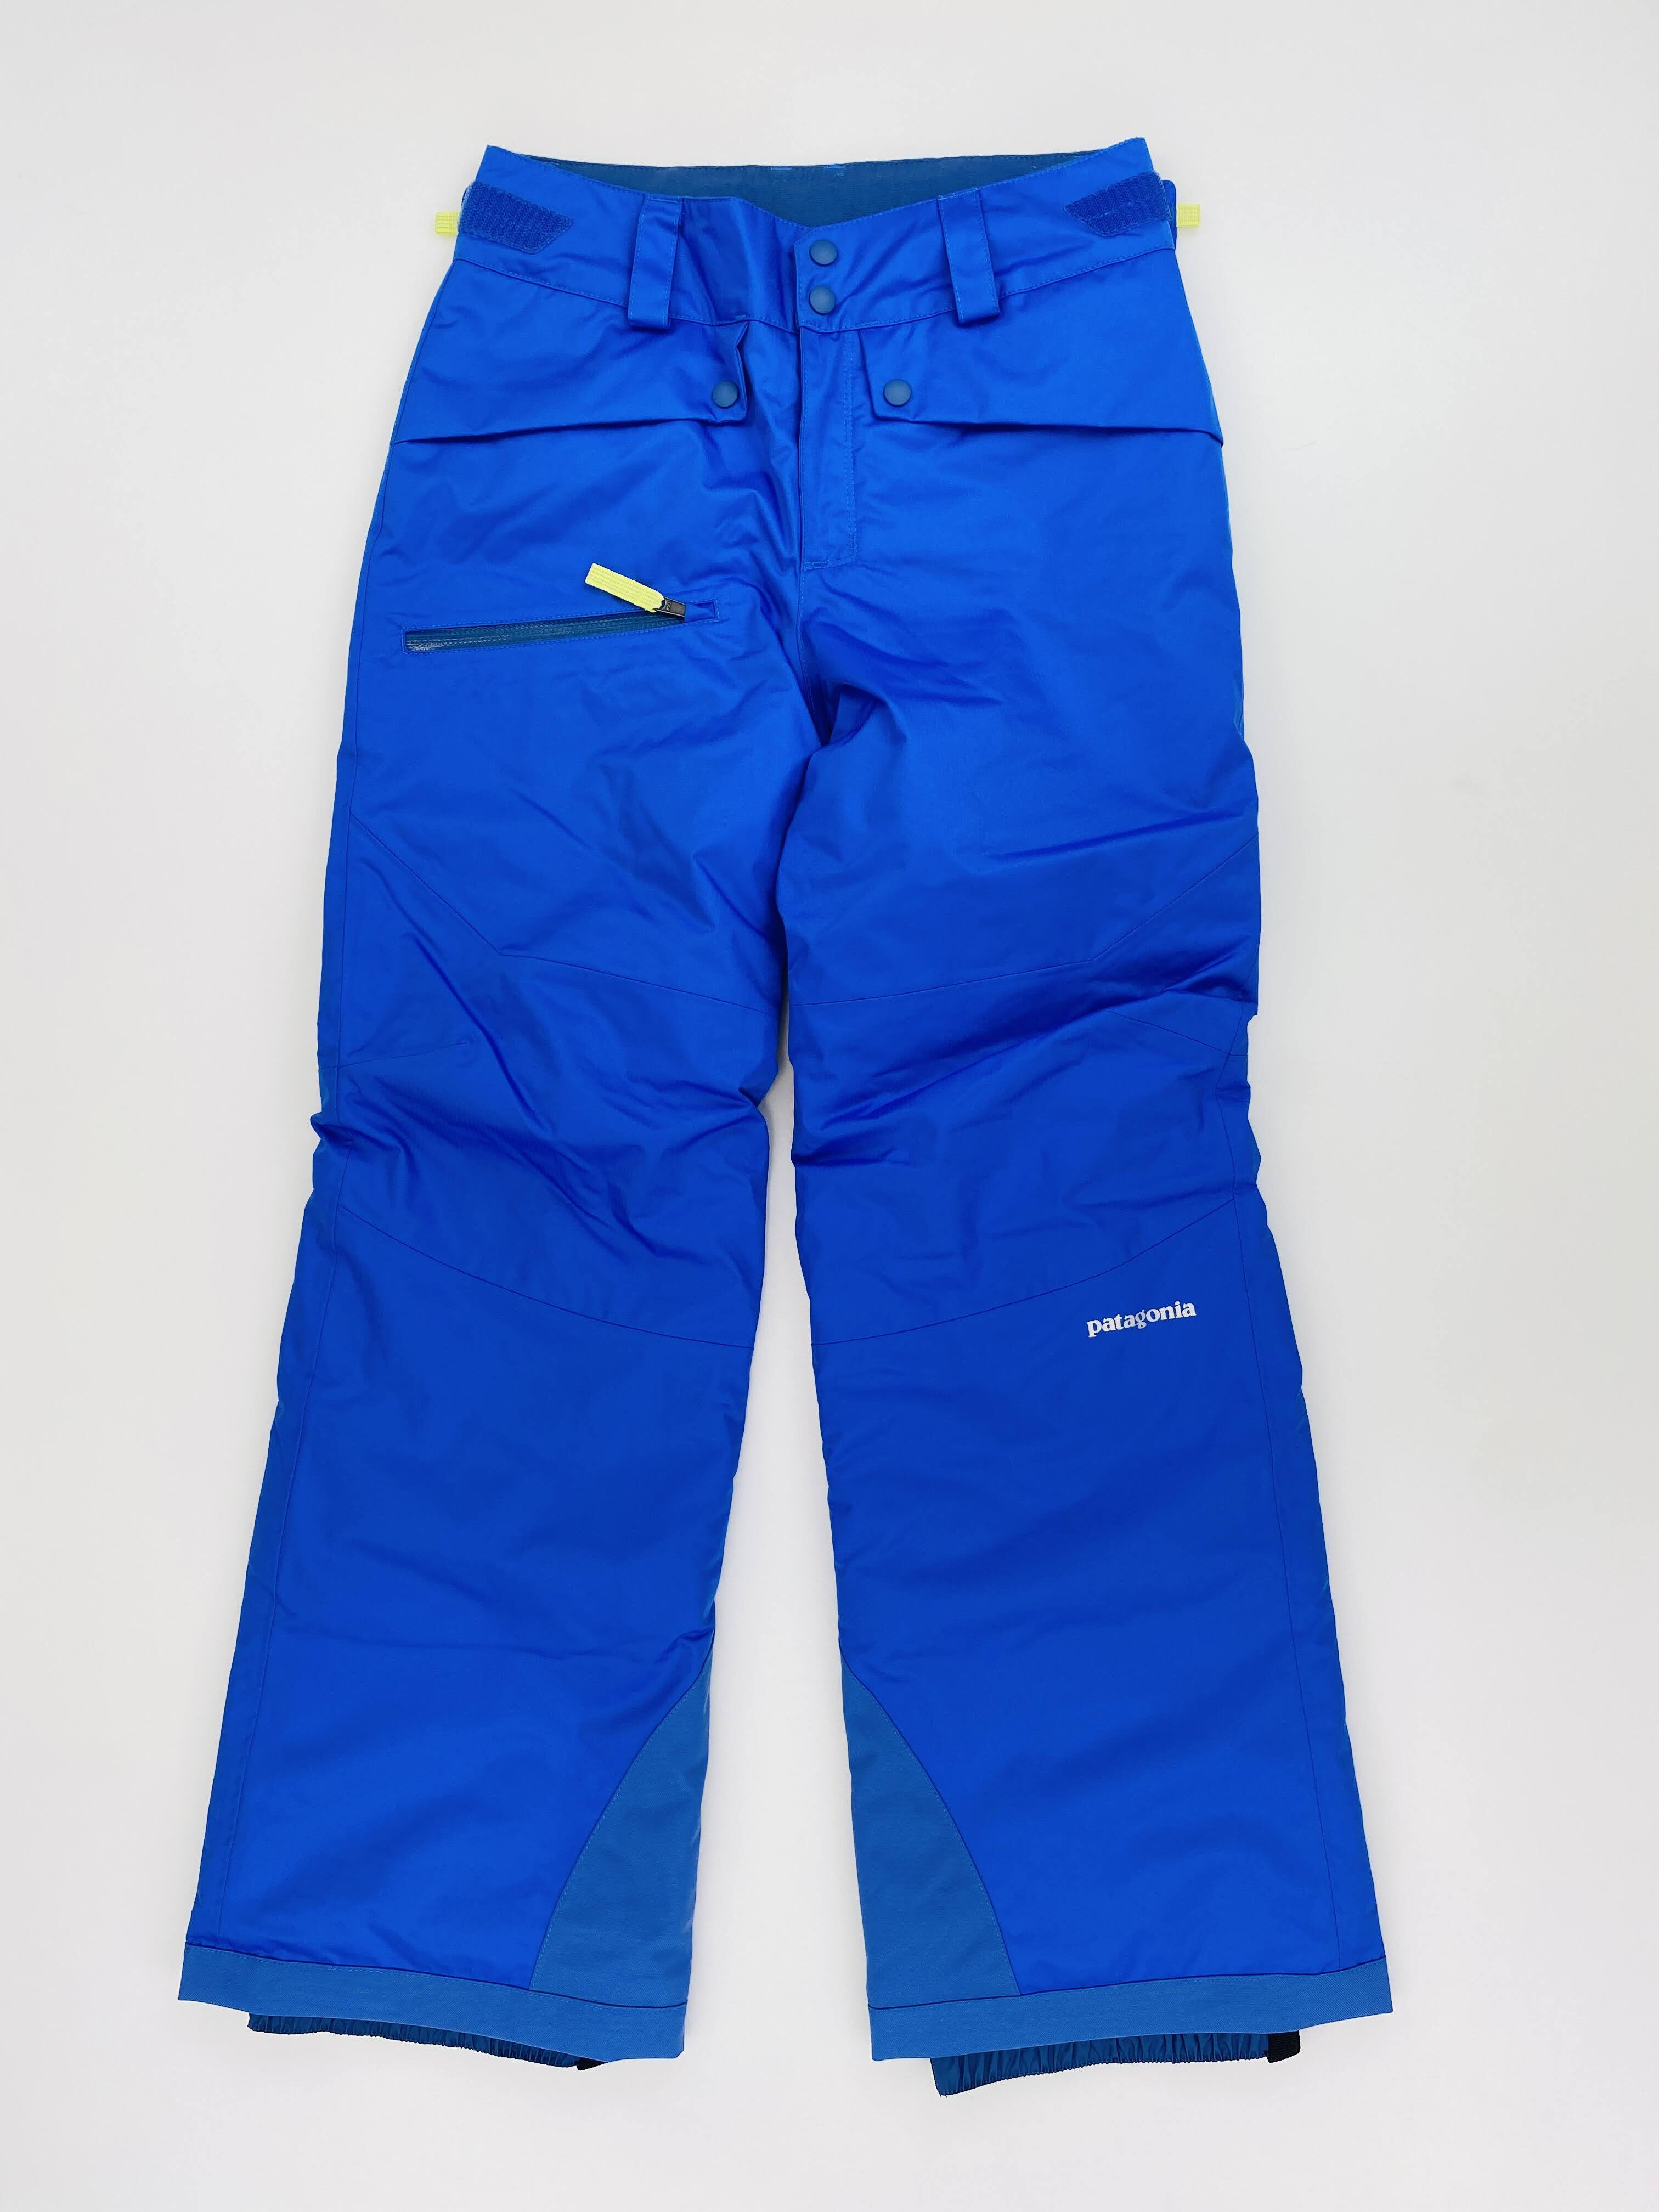 Patagonia Girls' Snowbelle Pants - Seconde main Pantalon ski enfant - Bleu - M | Hardloop